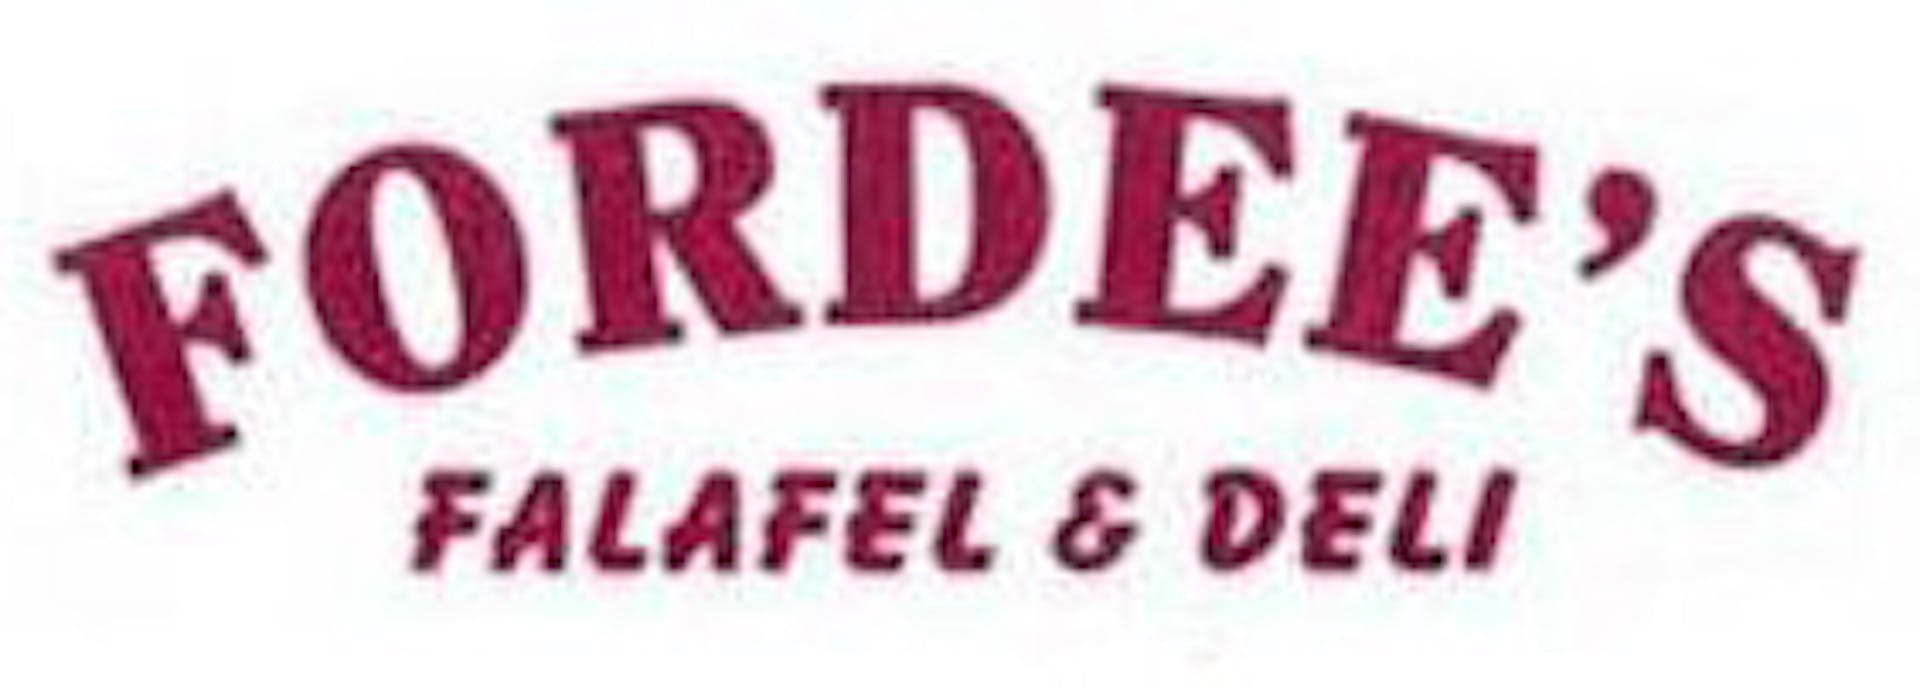 Fordee's Falafel & Deli